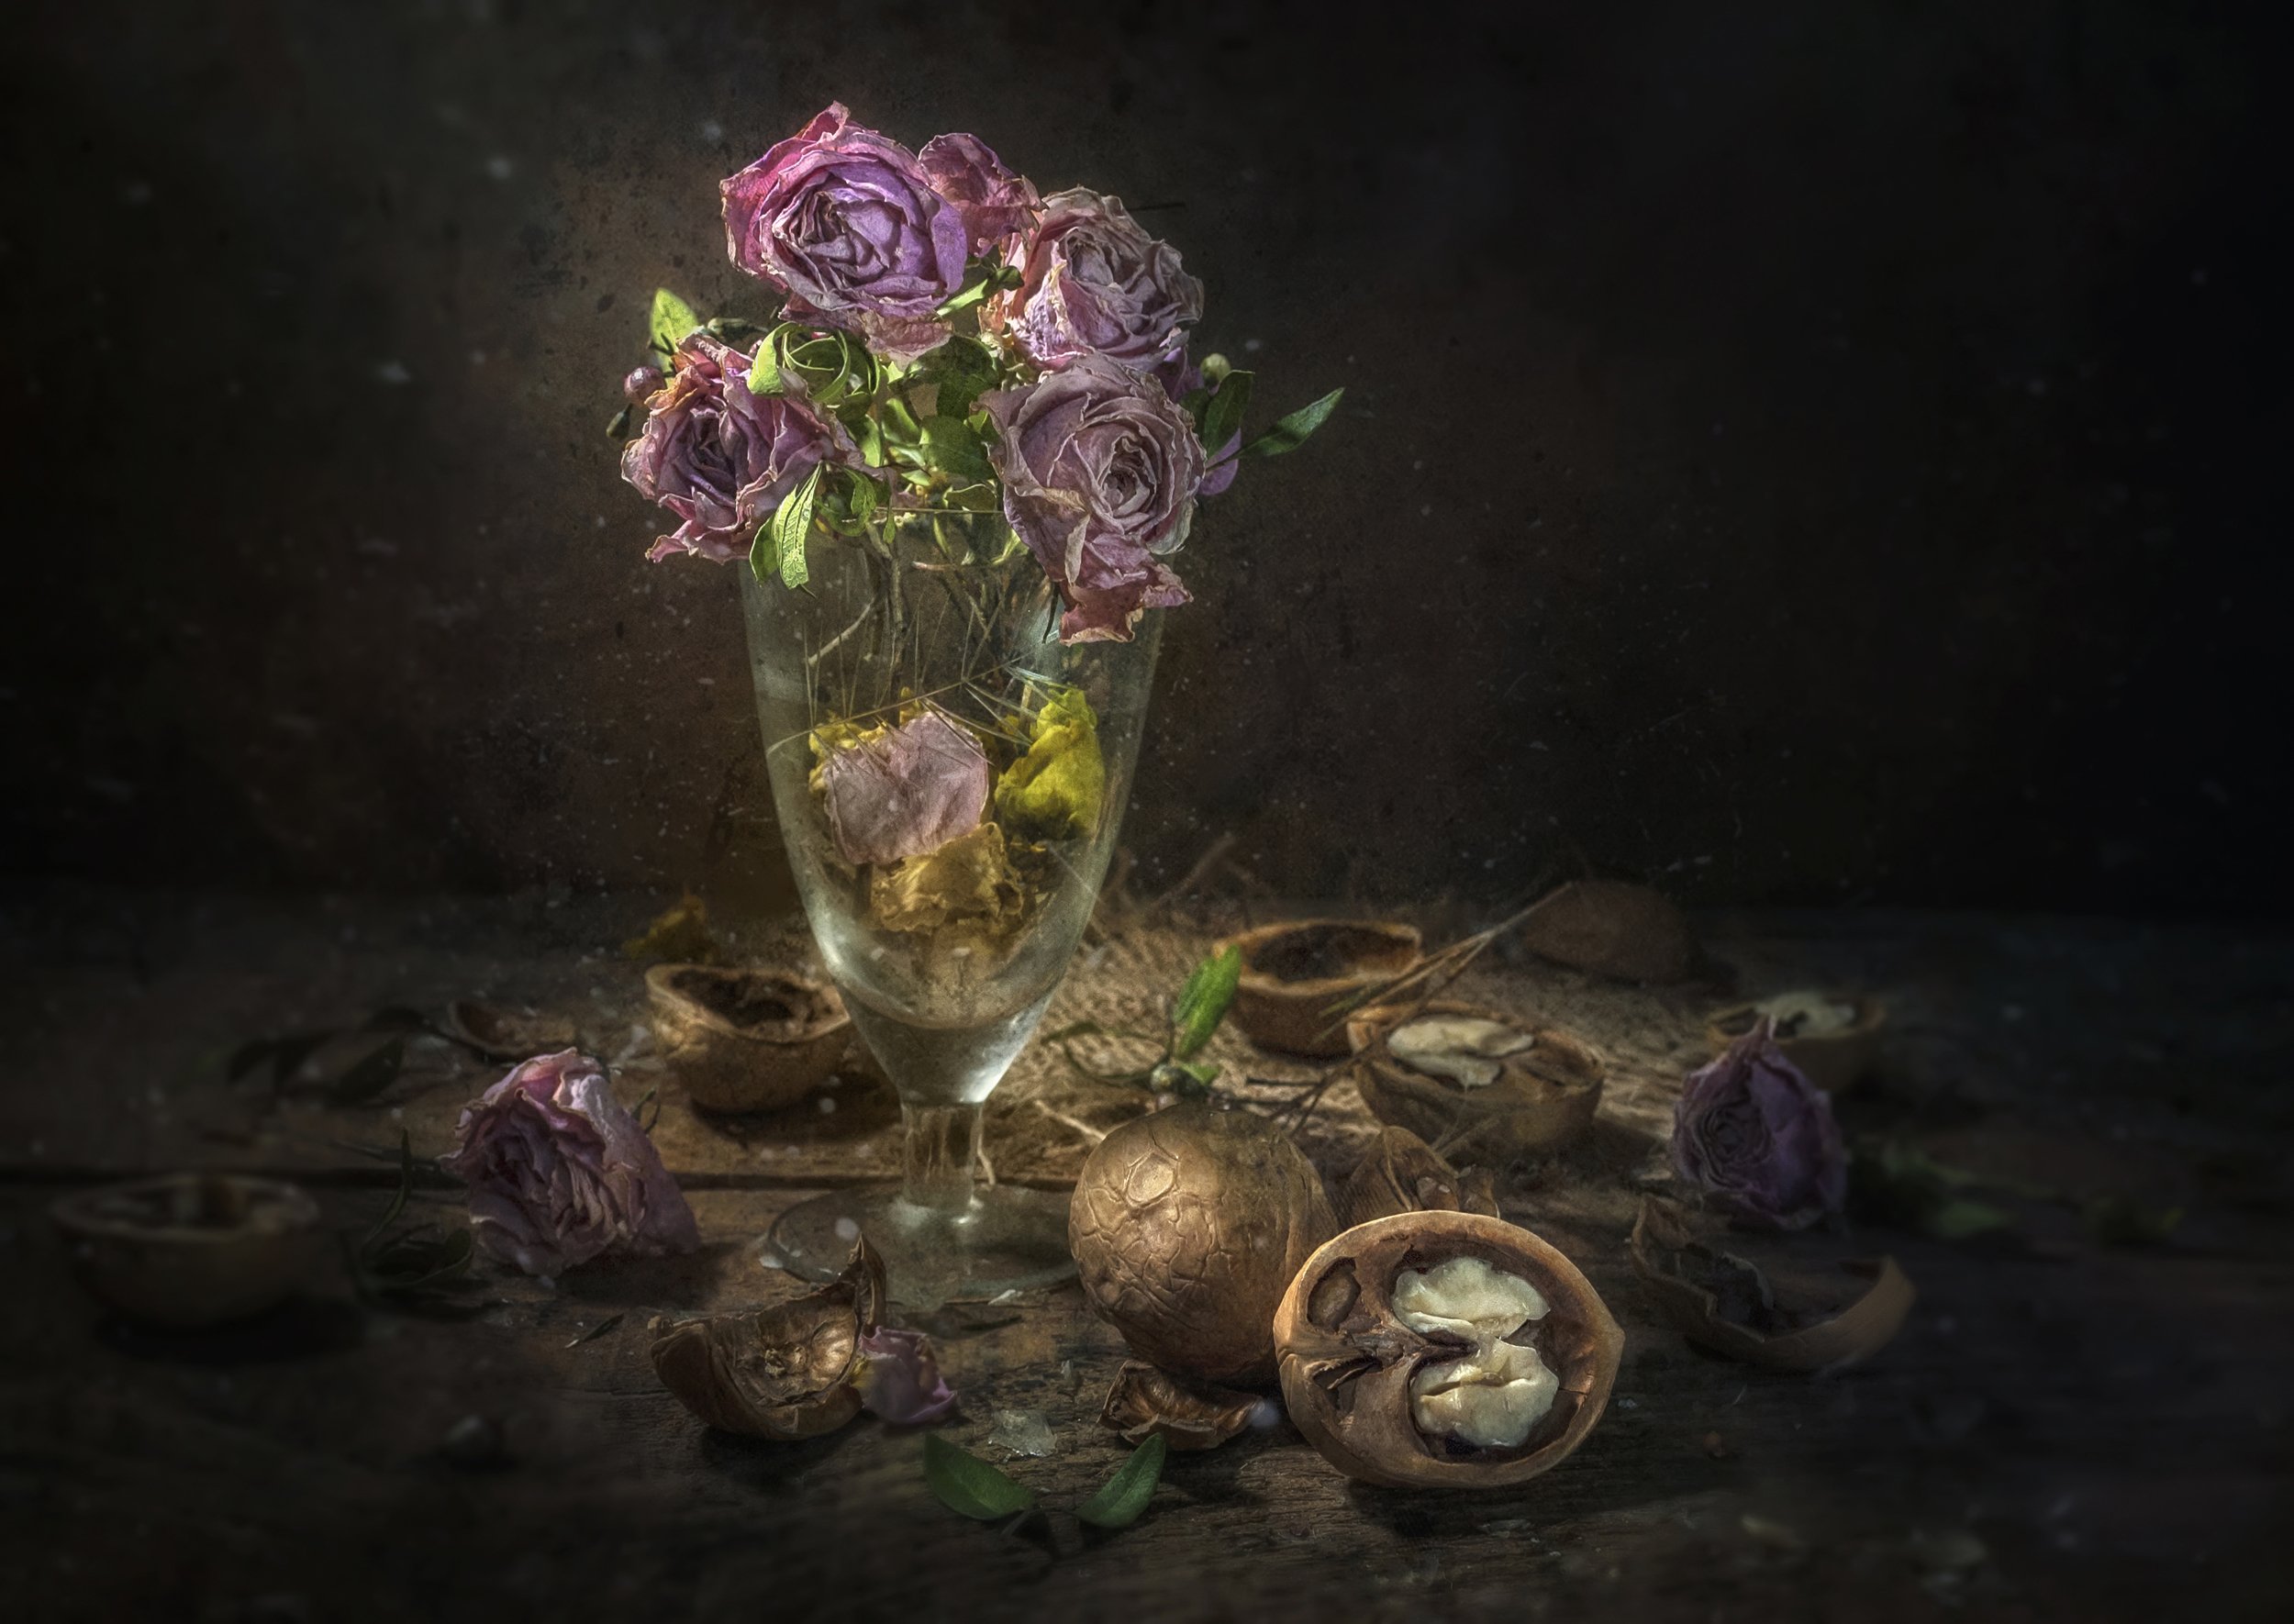 розовый,розы,цветы,засохшие,старые,лепестки,стопка,грецкие орехи,скорлупа,тёмный,воспоминание, Владимир Володин